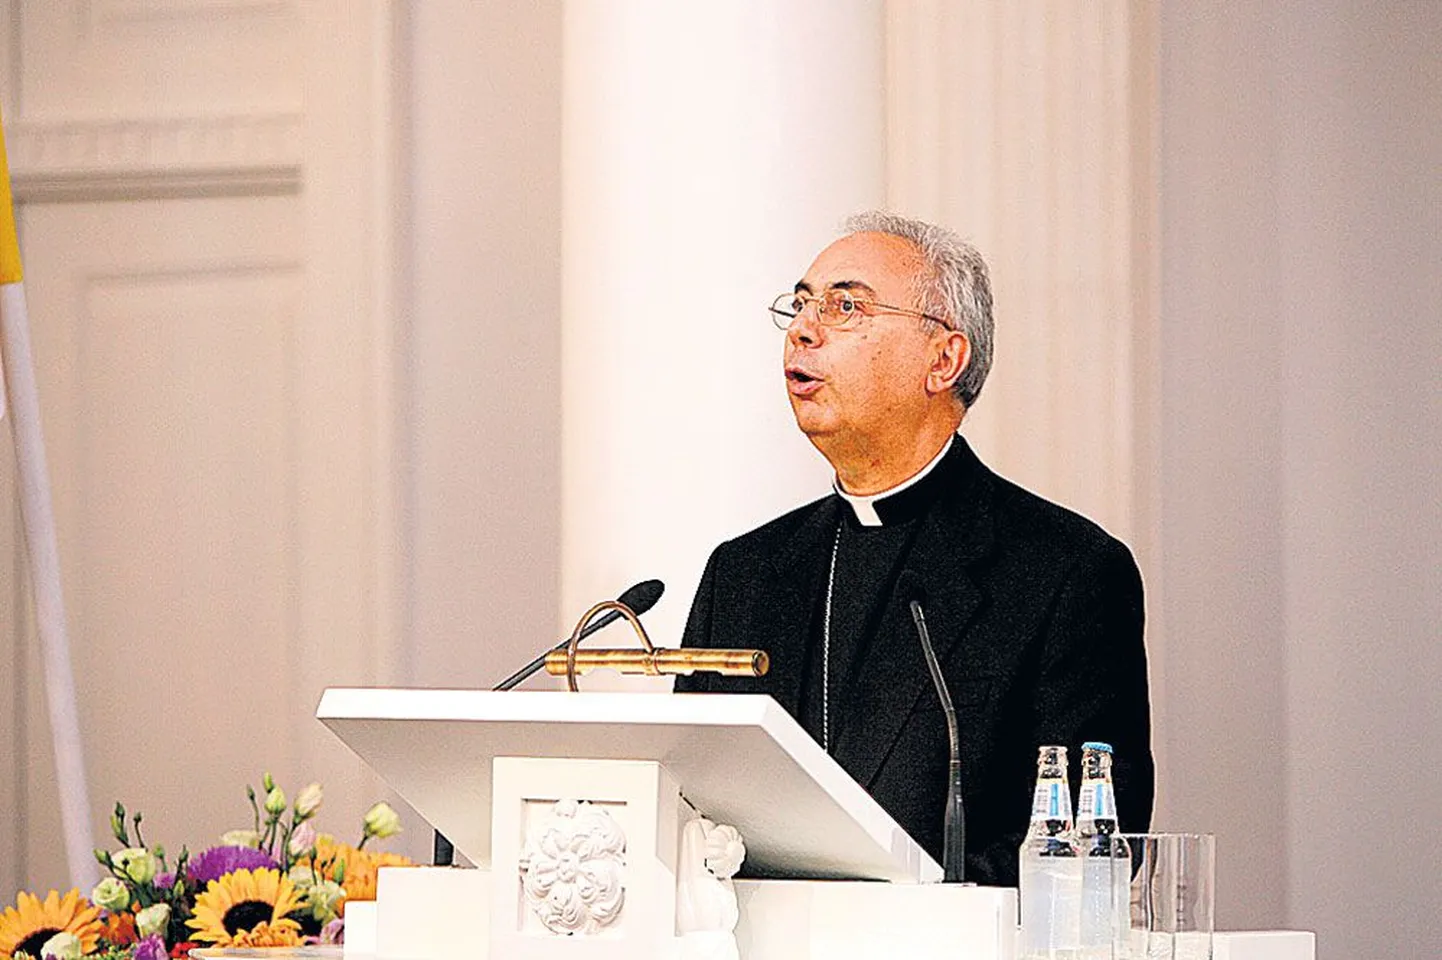 Vatikani riikidevaheliste suhete sekretär Tema Ekstsellents peapiiskop Domi­nique Mamberti pidamas aulaloengut Tartu Ülikoolis.